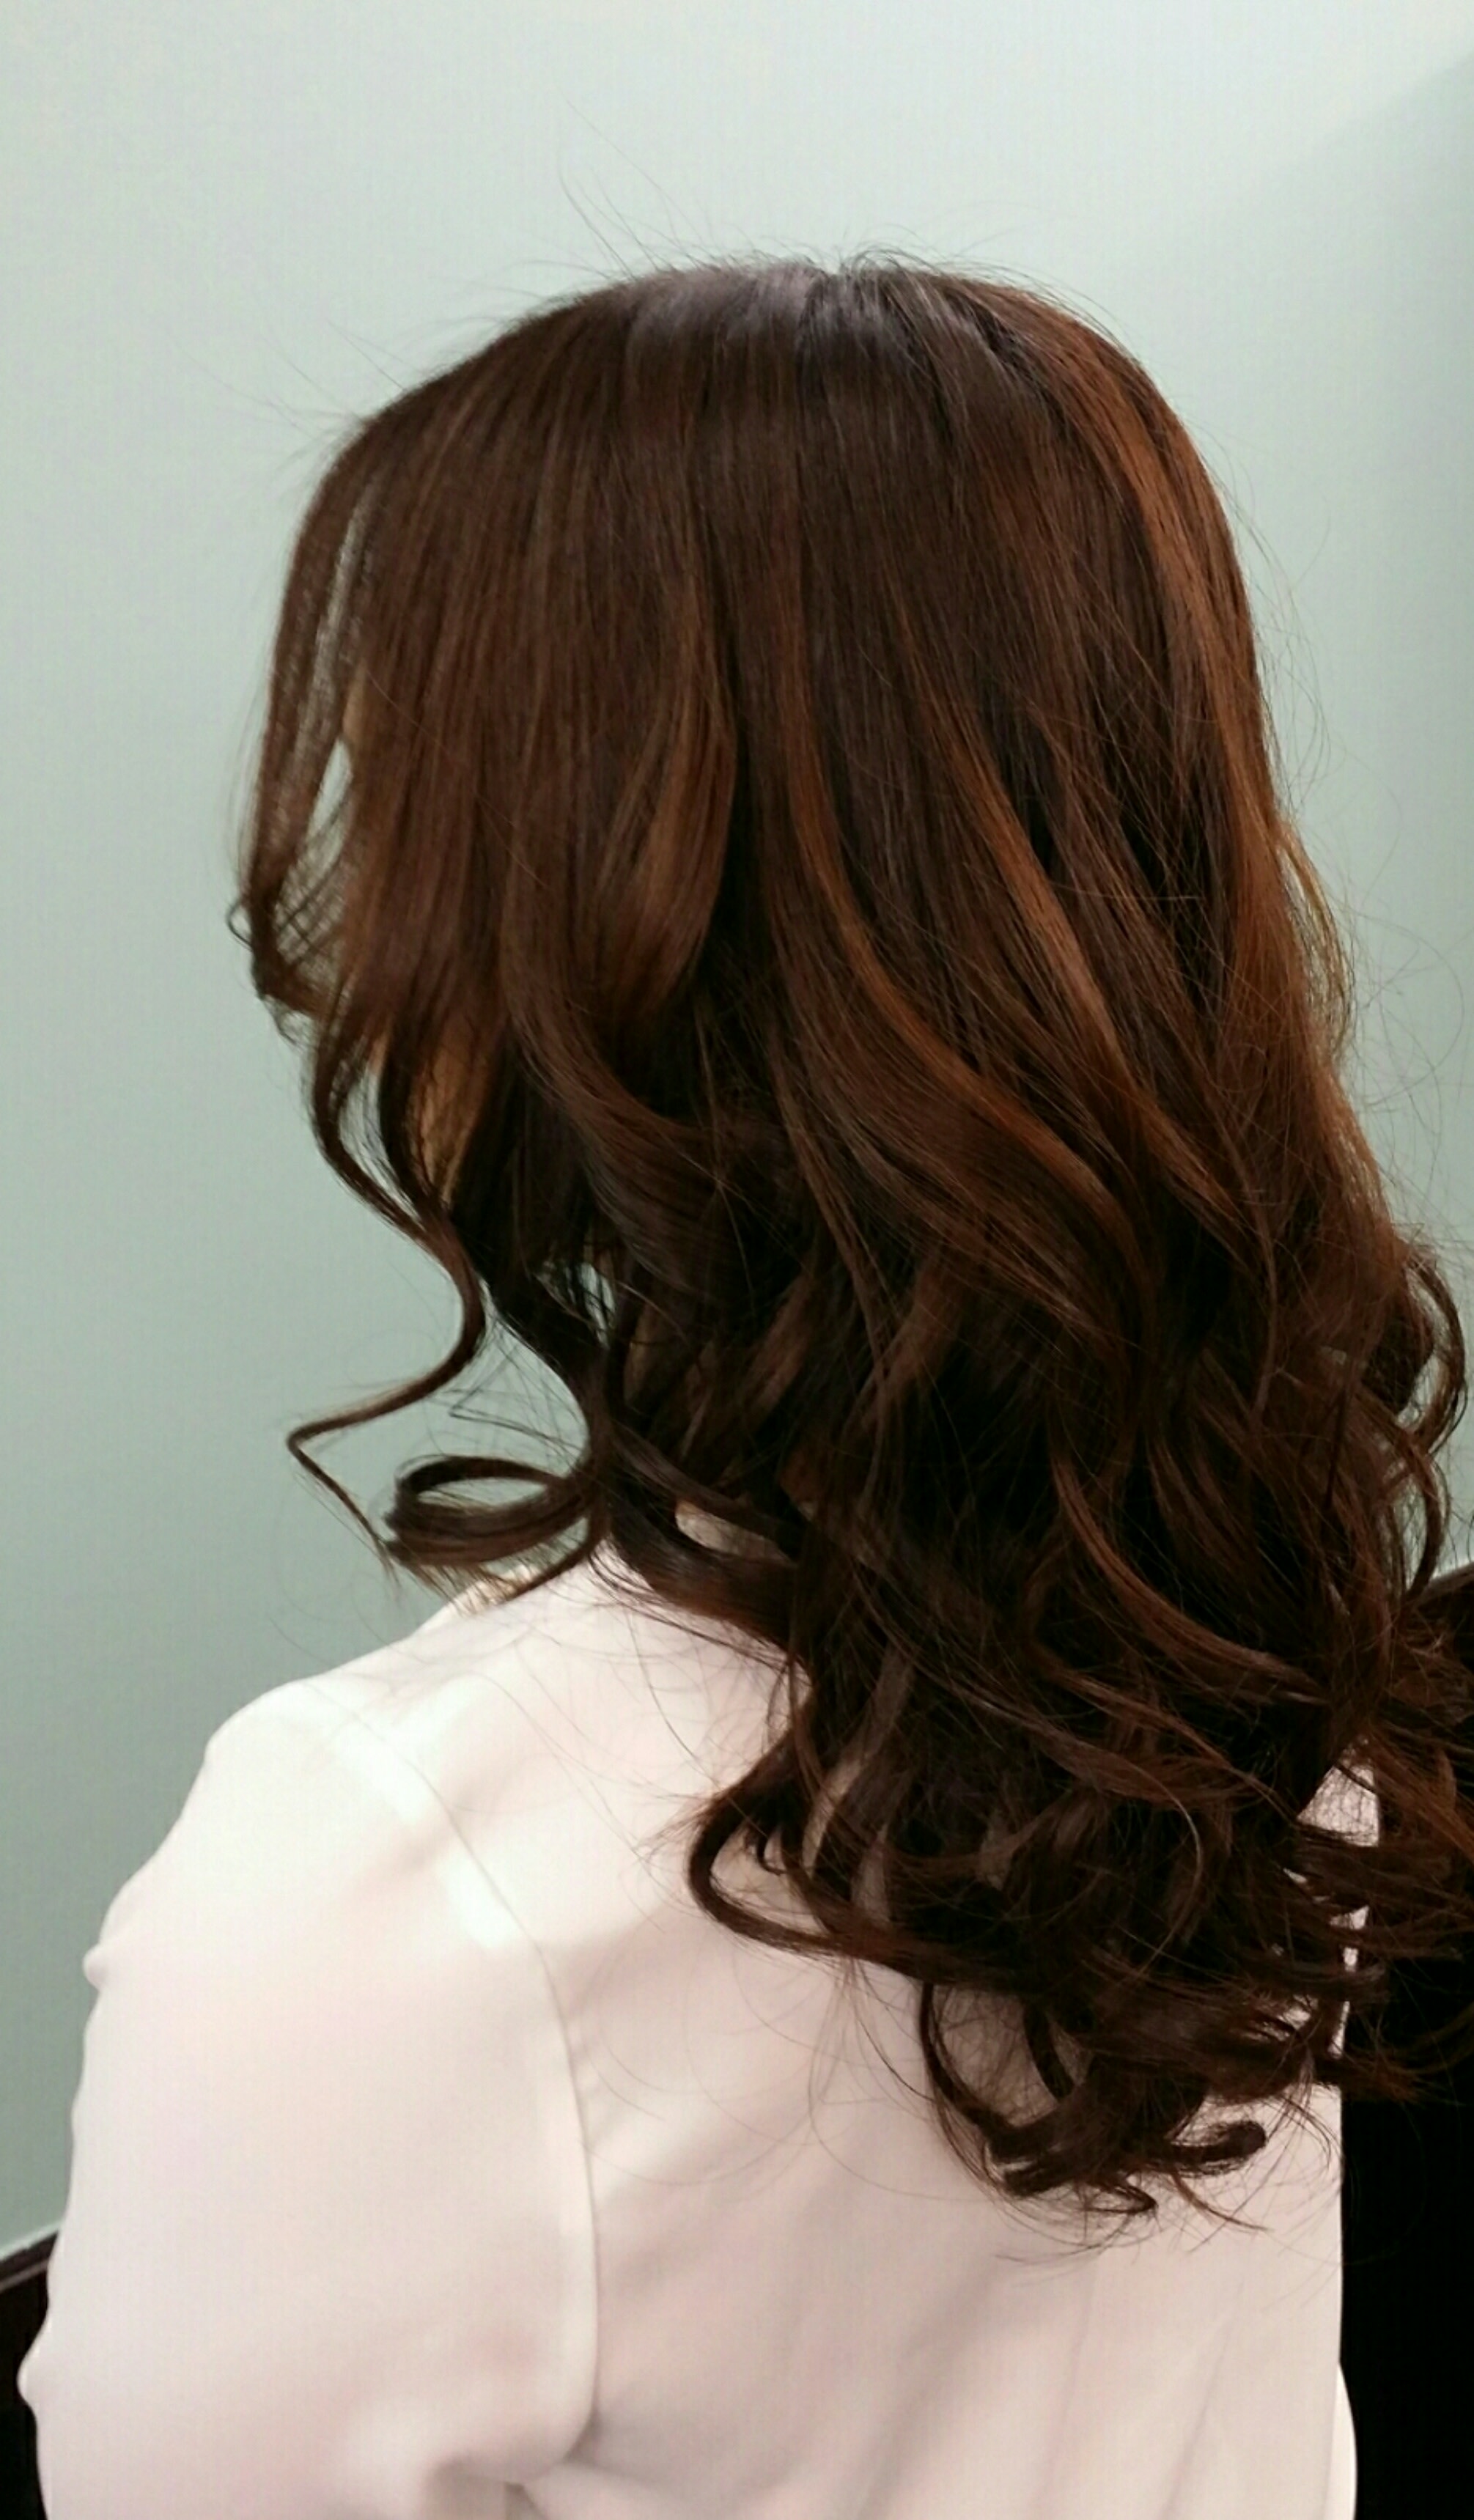 Happiness hair【ハピネスヘア】のスタイル紹介。カラーチェンジコーティング+巻き髪